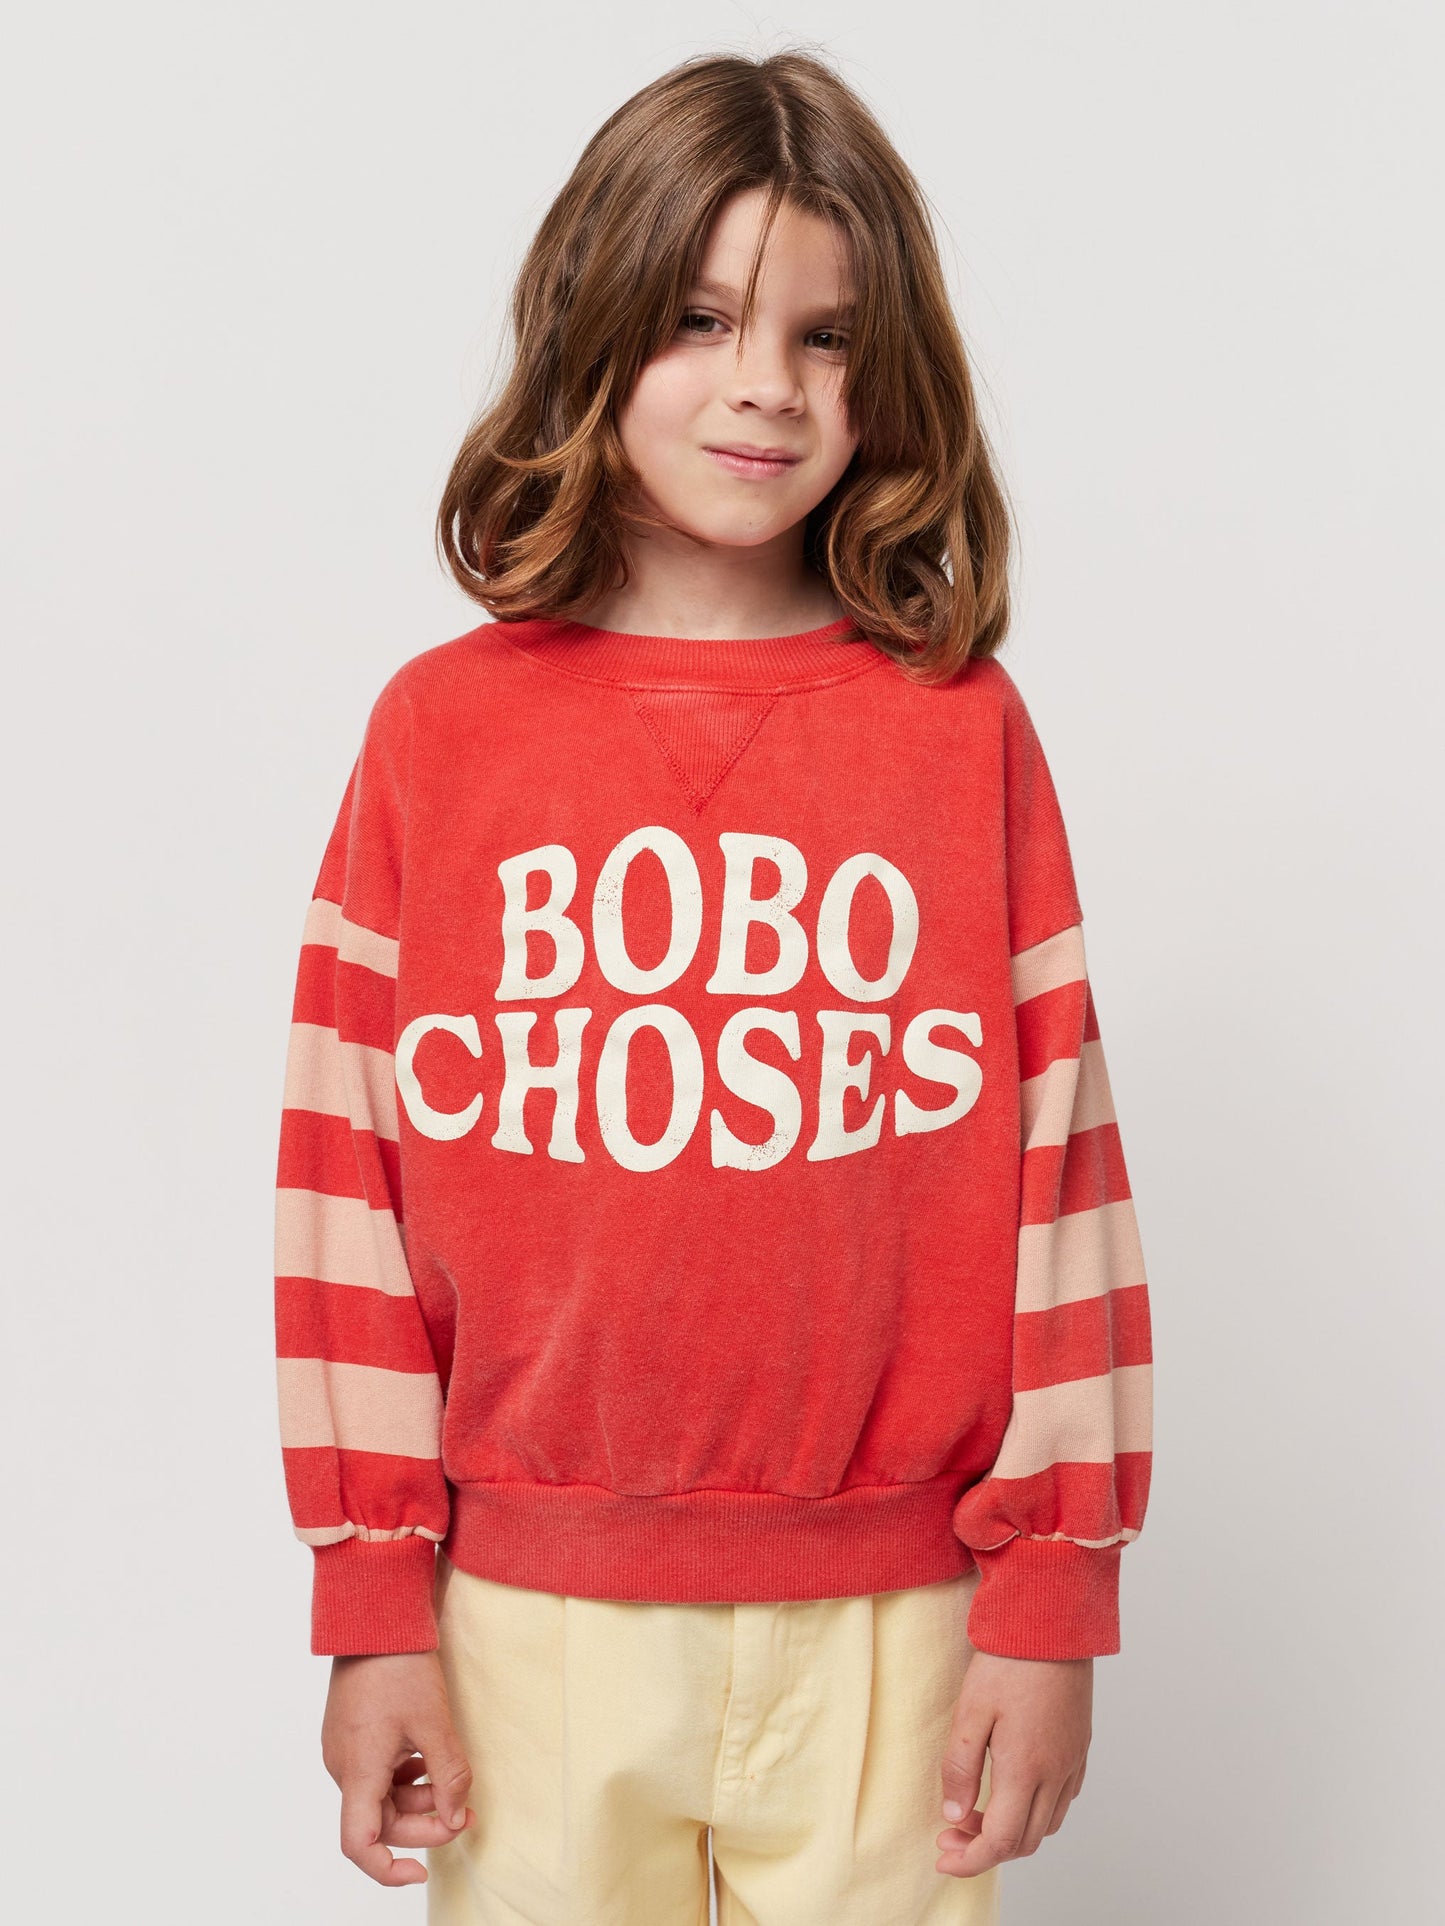 BOBO CHOSES - Sweatshirt Unisex Stripes